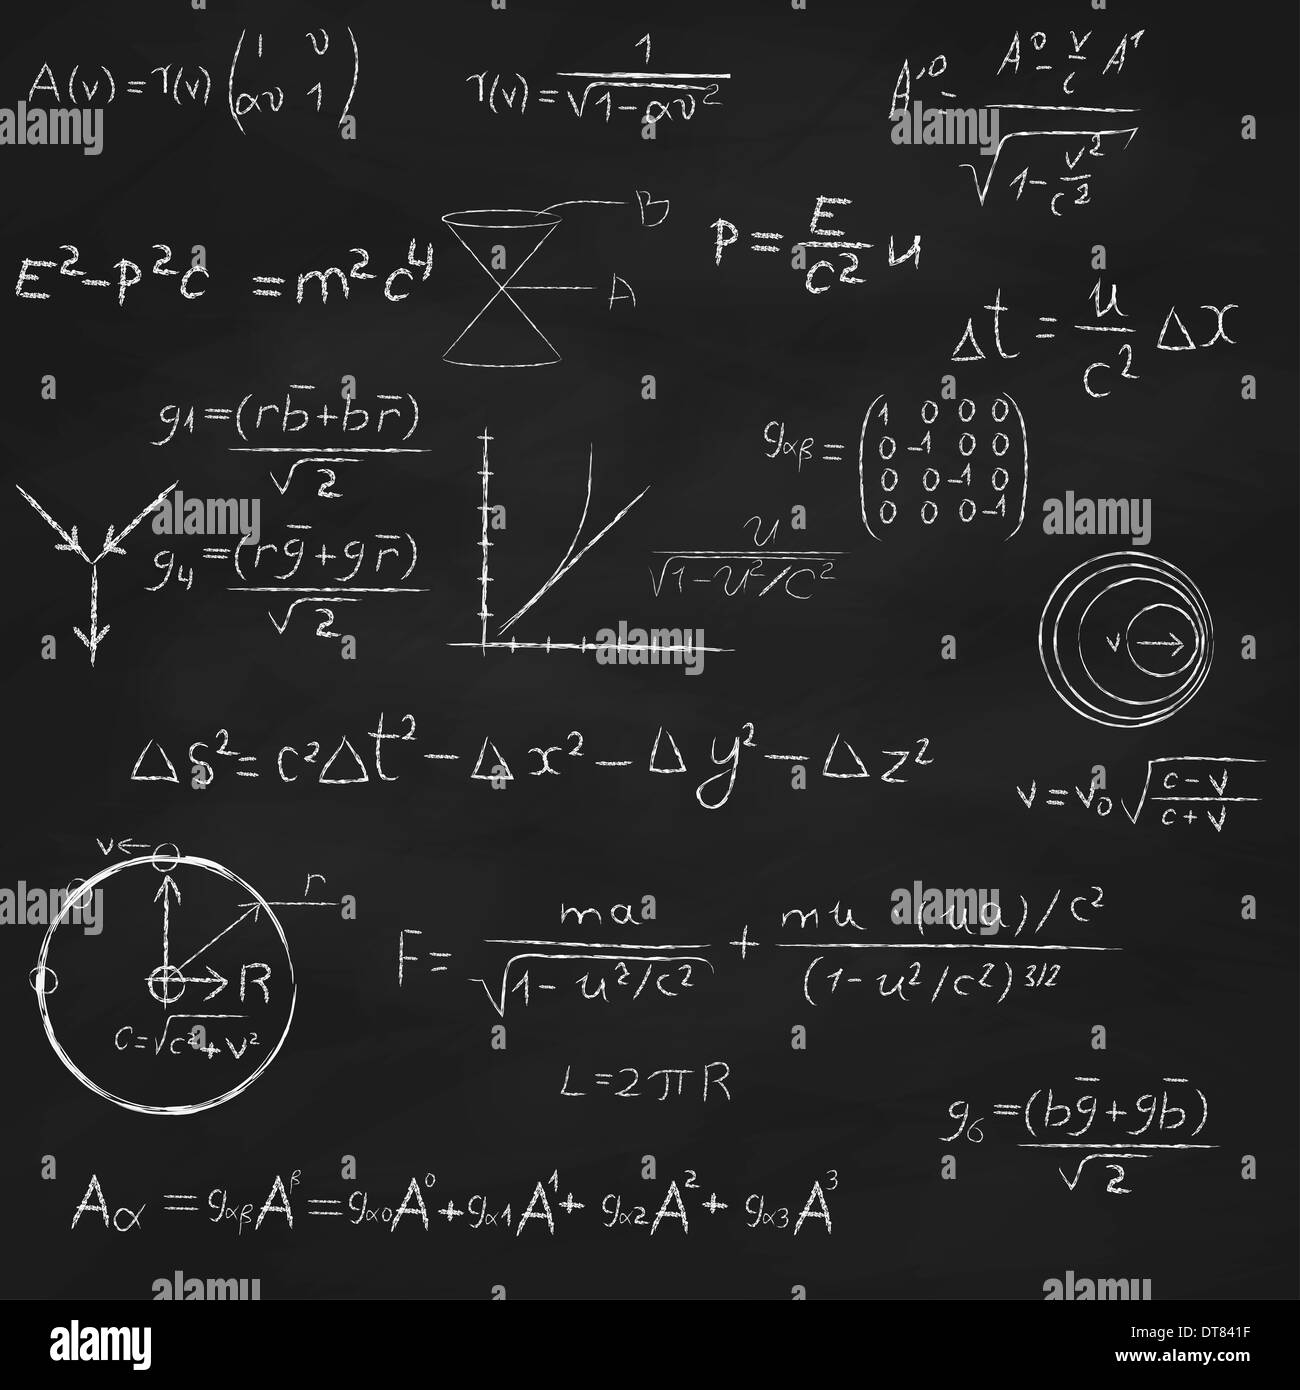 Hintergrund mit Blackboard mit Relativitätstheorie und String Theorie Gleichungen, Formeln und Handzeichnungen. Stockfoto